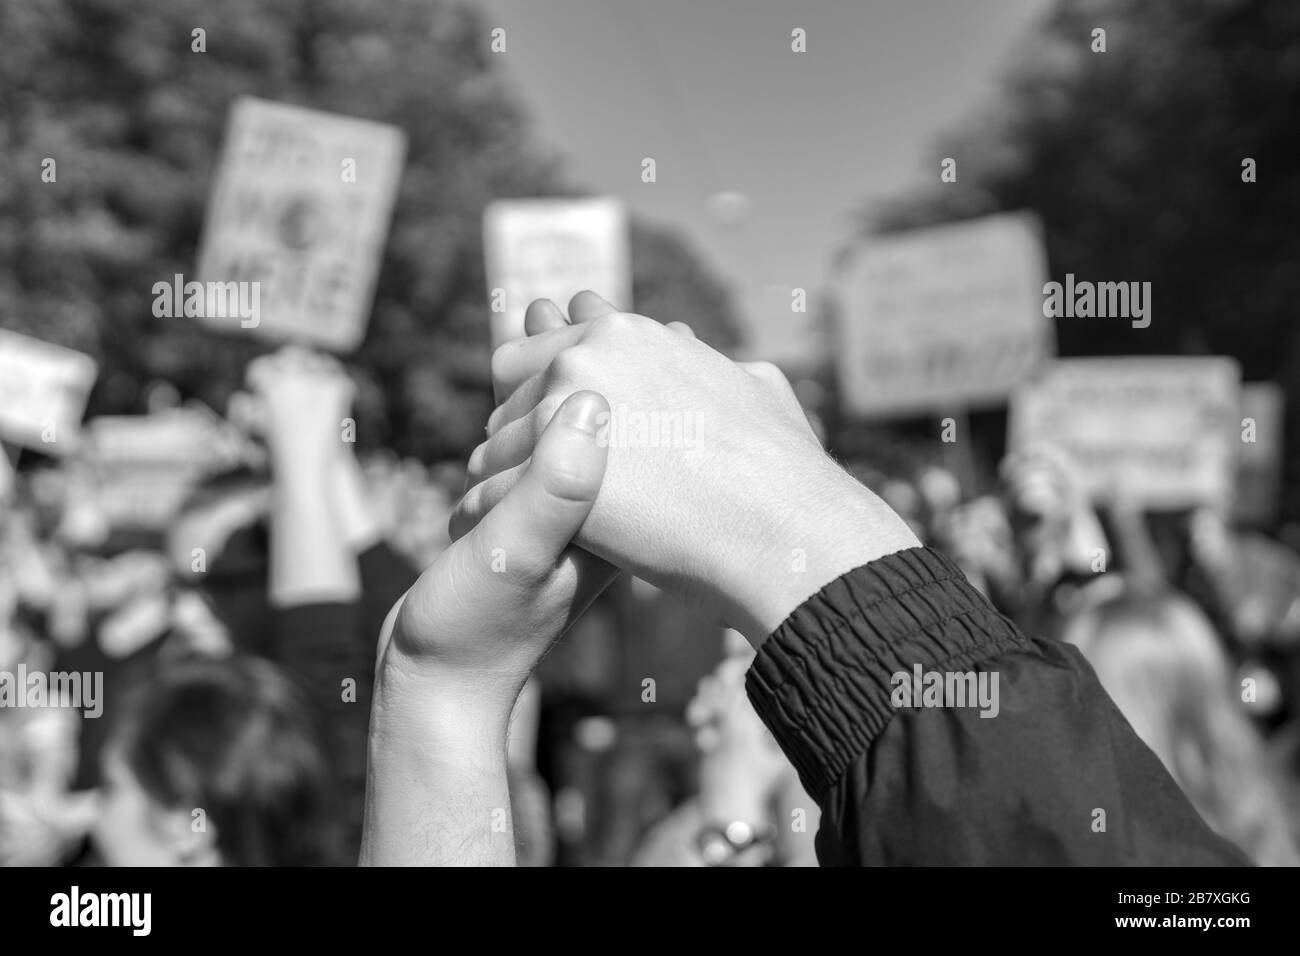 Fotografieren Sie in Schwarzweiß von zwei Personen, die sich freitags zu einem zukünftigen Protest gegen den Klimawandel zusammenschließen und damit die Kraft symbolisieren Stockfoto